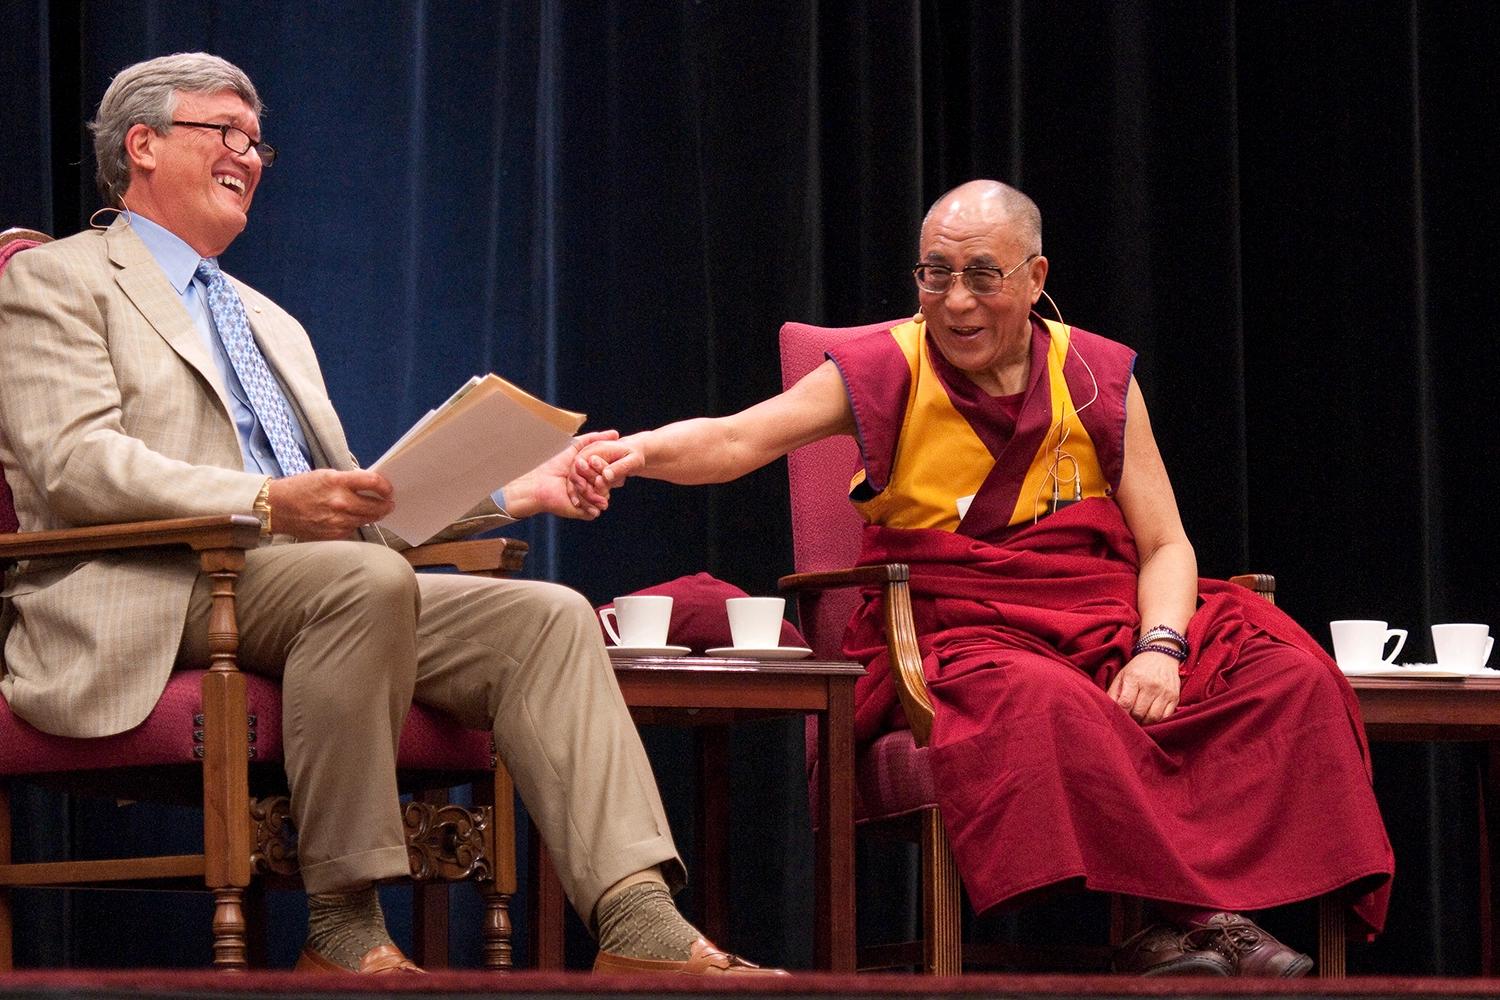 dalai lama si lo quieres por su inteligencia es admiracion - Qué dice el Dalai Lama sobre el deseo